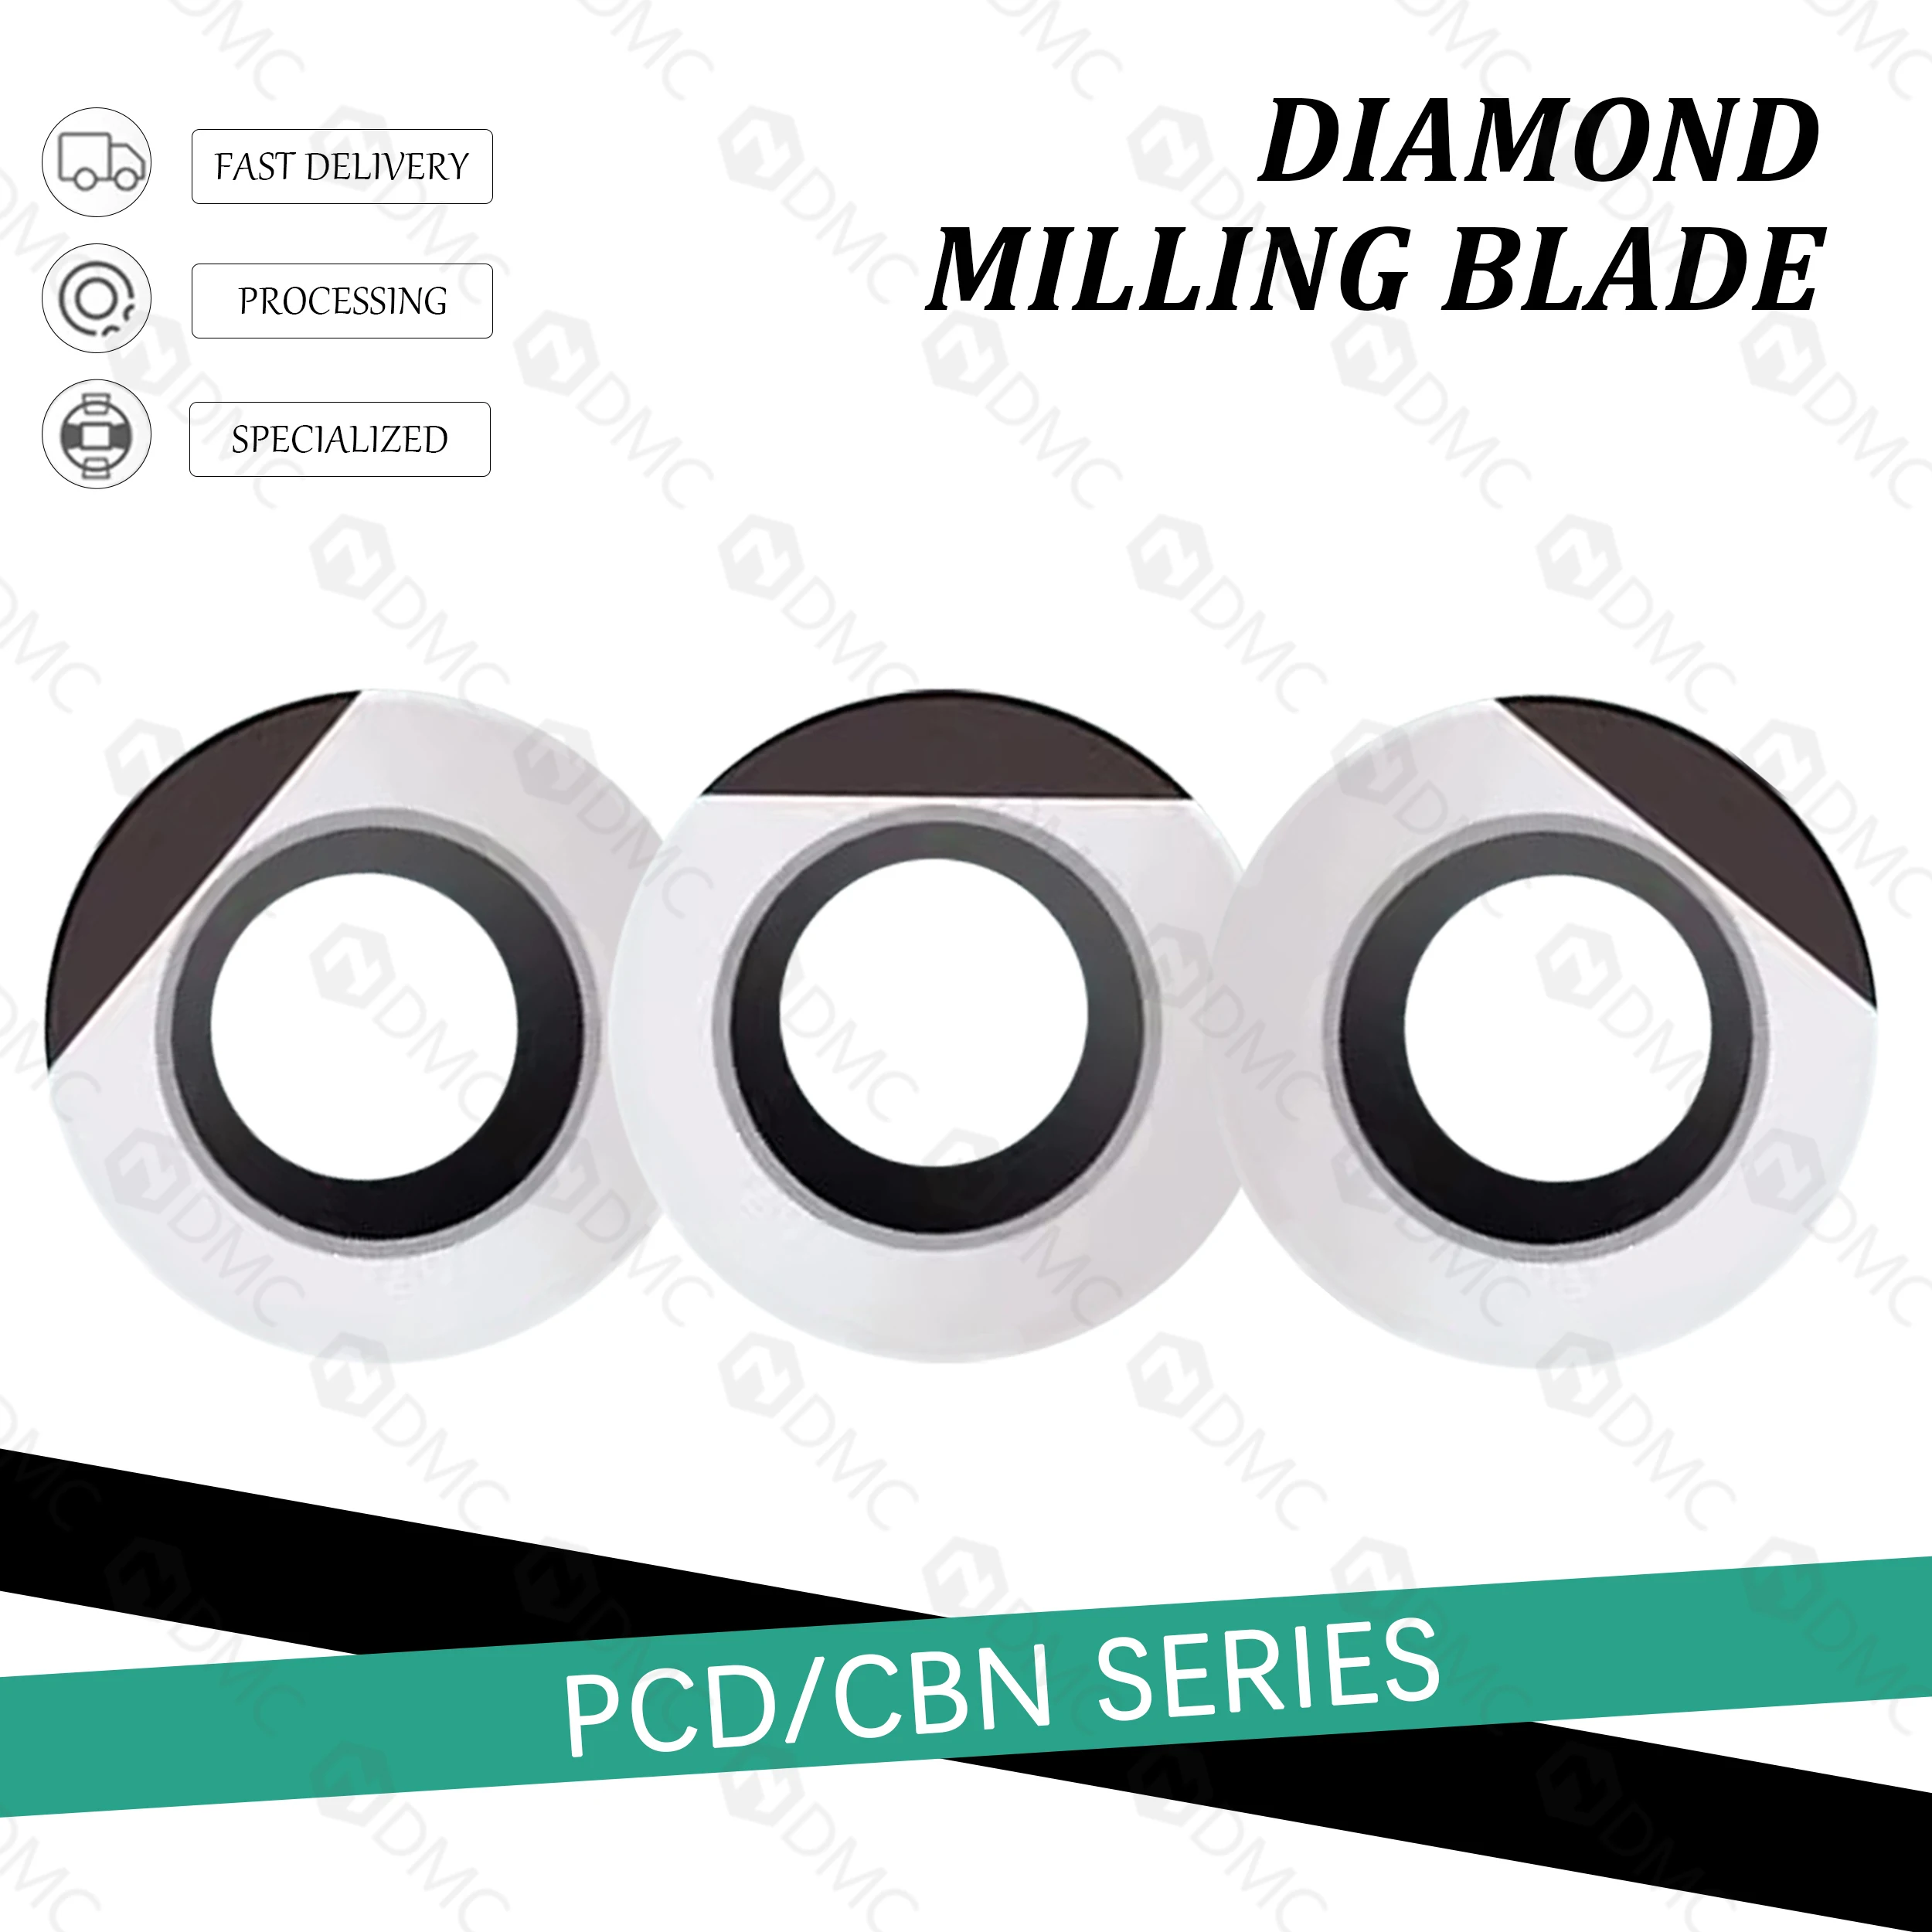 

RPMT10T3 PCD CBN кубические лезвия нитрида бора высококачественные алмазы для закалочной стали и меди алюминия R5 Круглые лезвия ЧПУ Инструменты